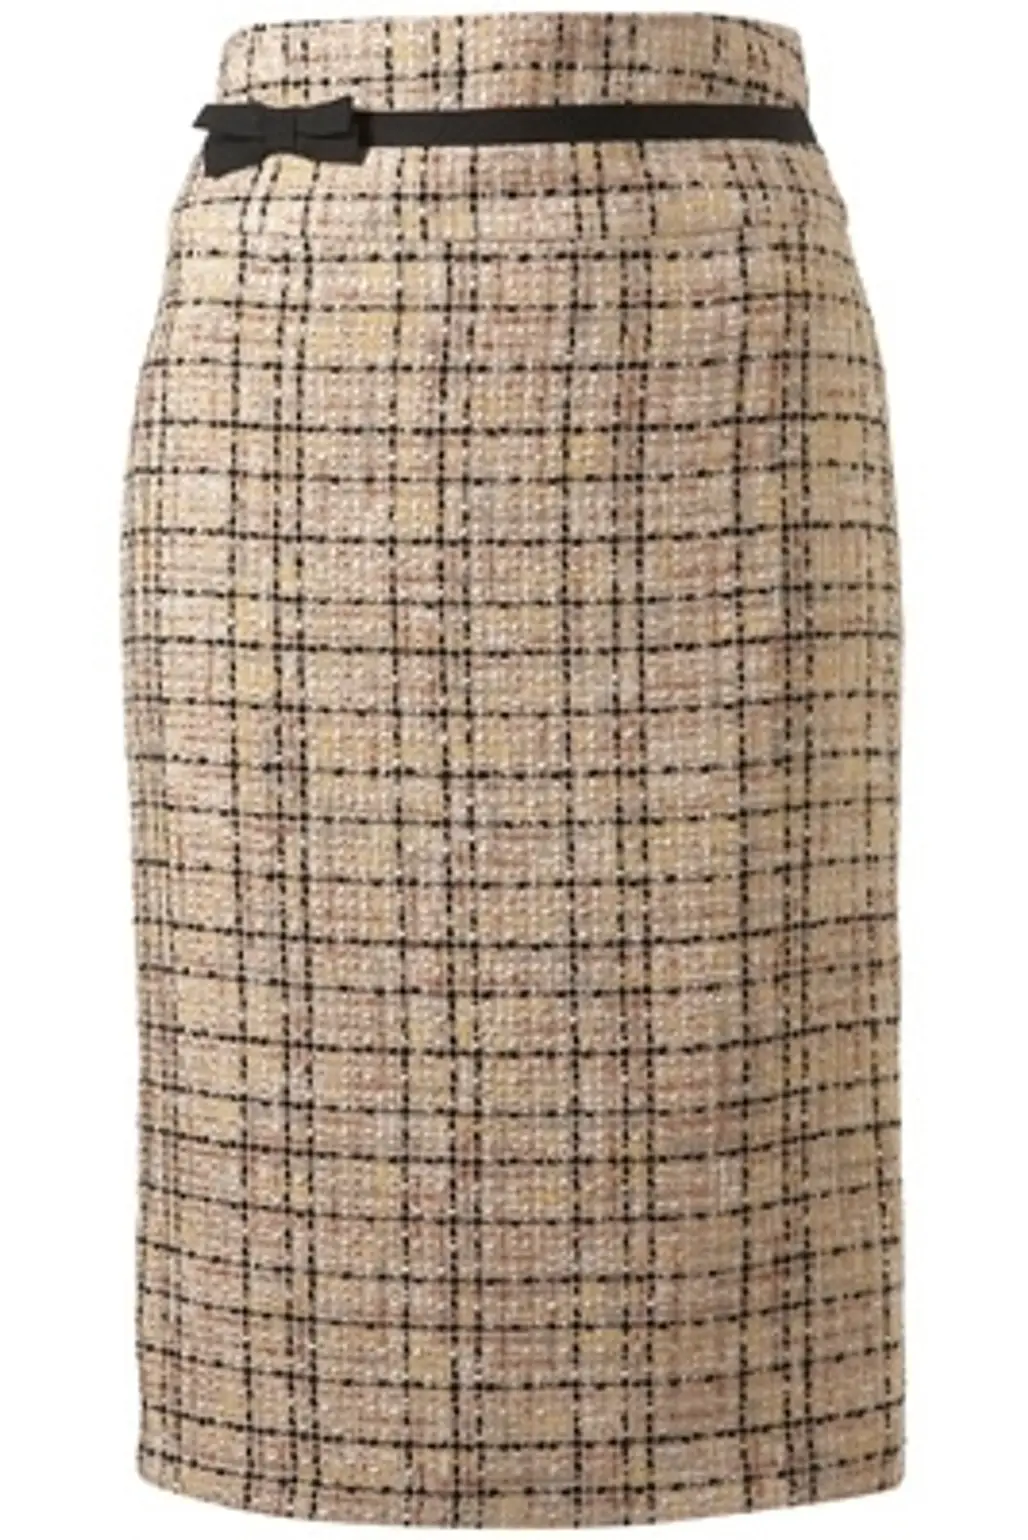 A Pencil Skirt